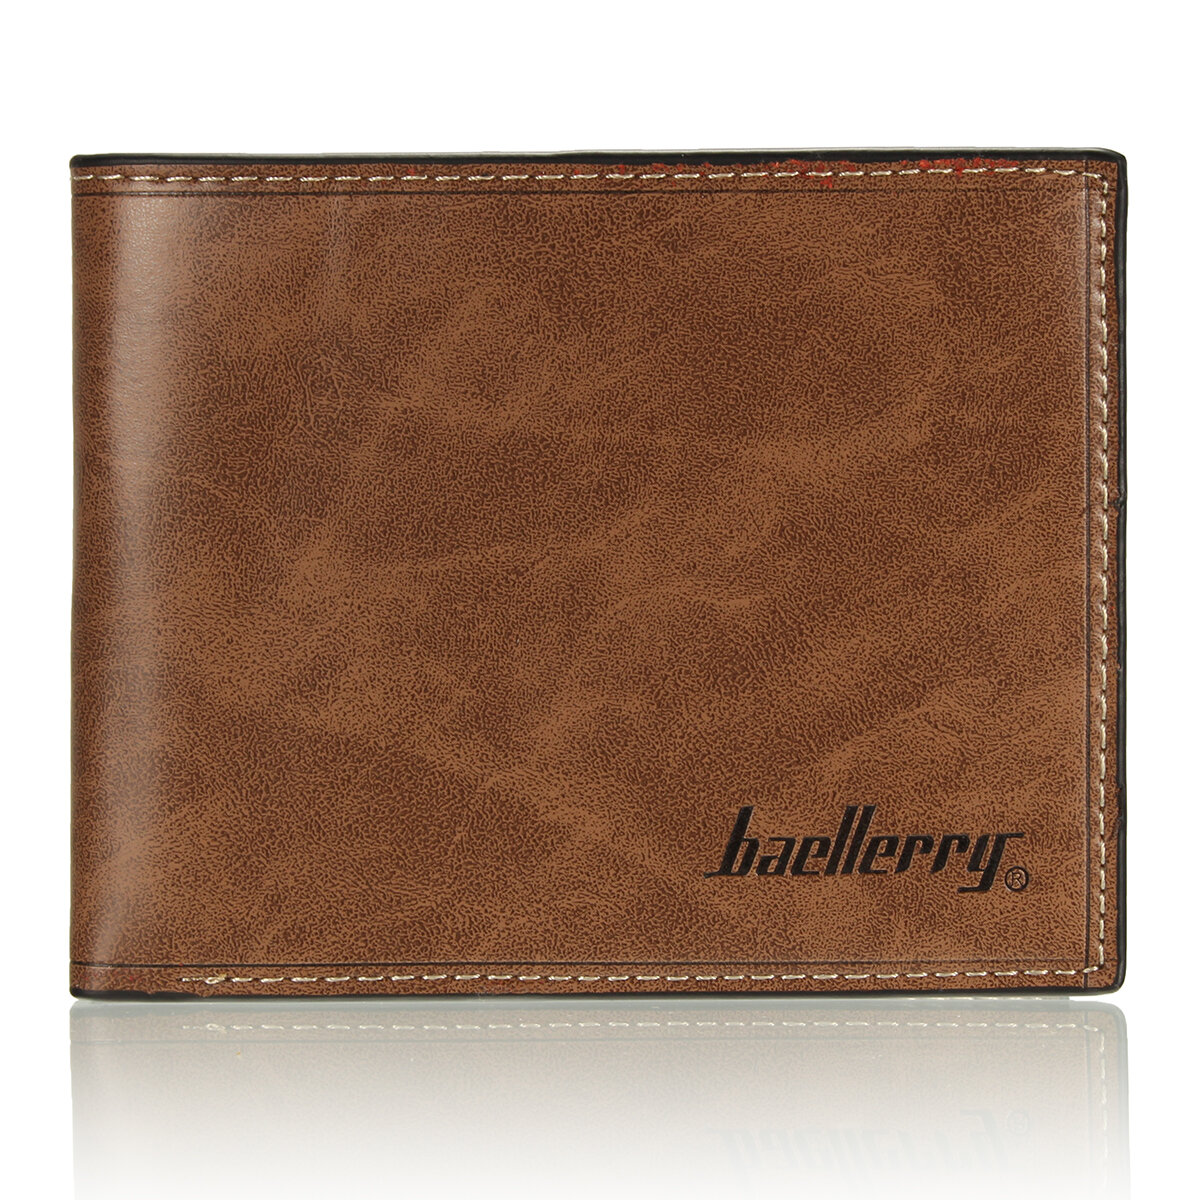 محفظة Baellerry Vintage للرجال من الجلد الصناعي الرقيق معرف الائتمان بطاقة حامل محفظة عملات معدنية رفيعة جيب